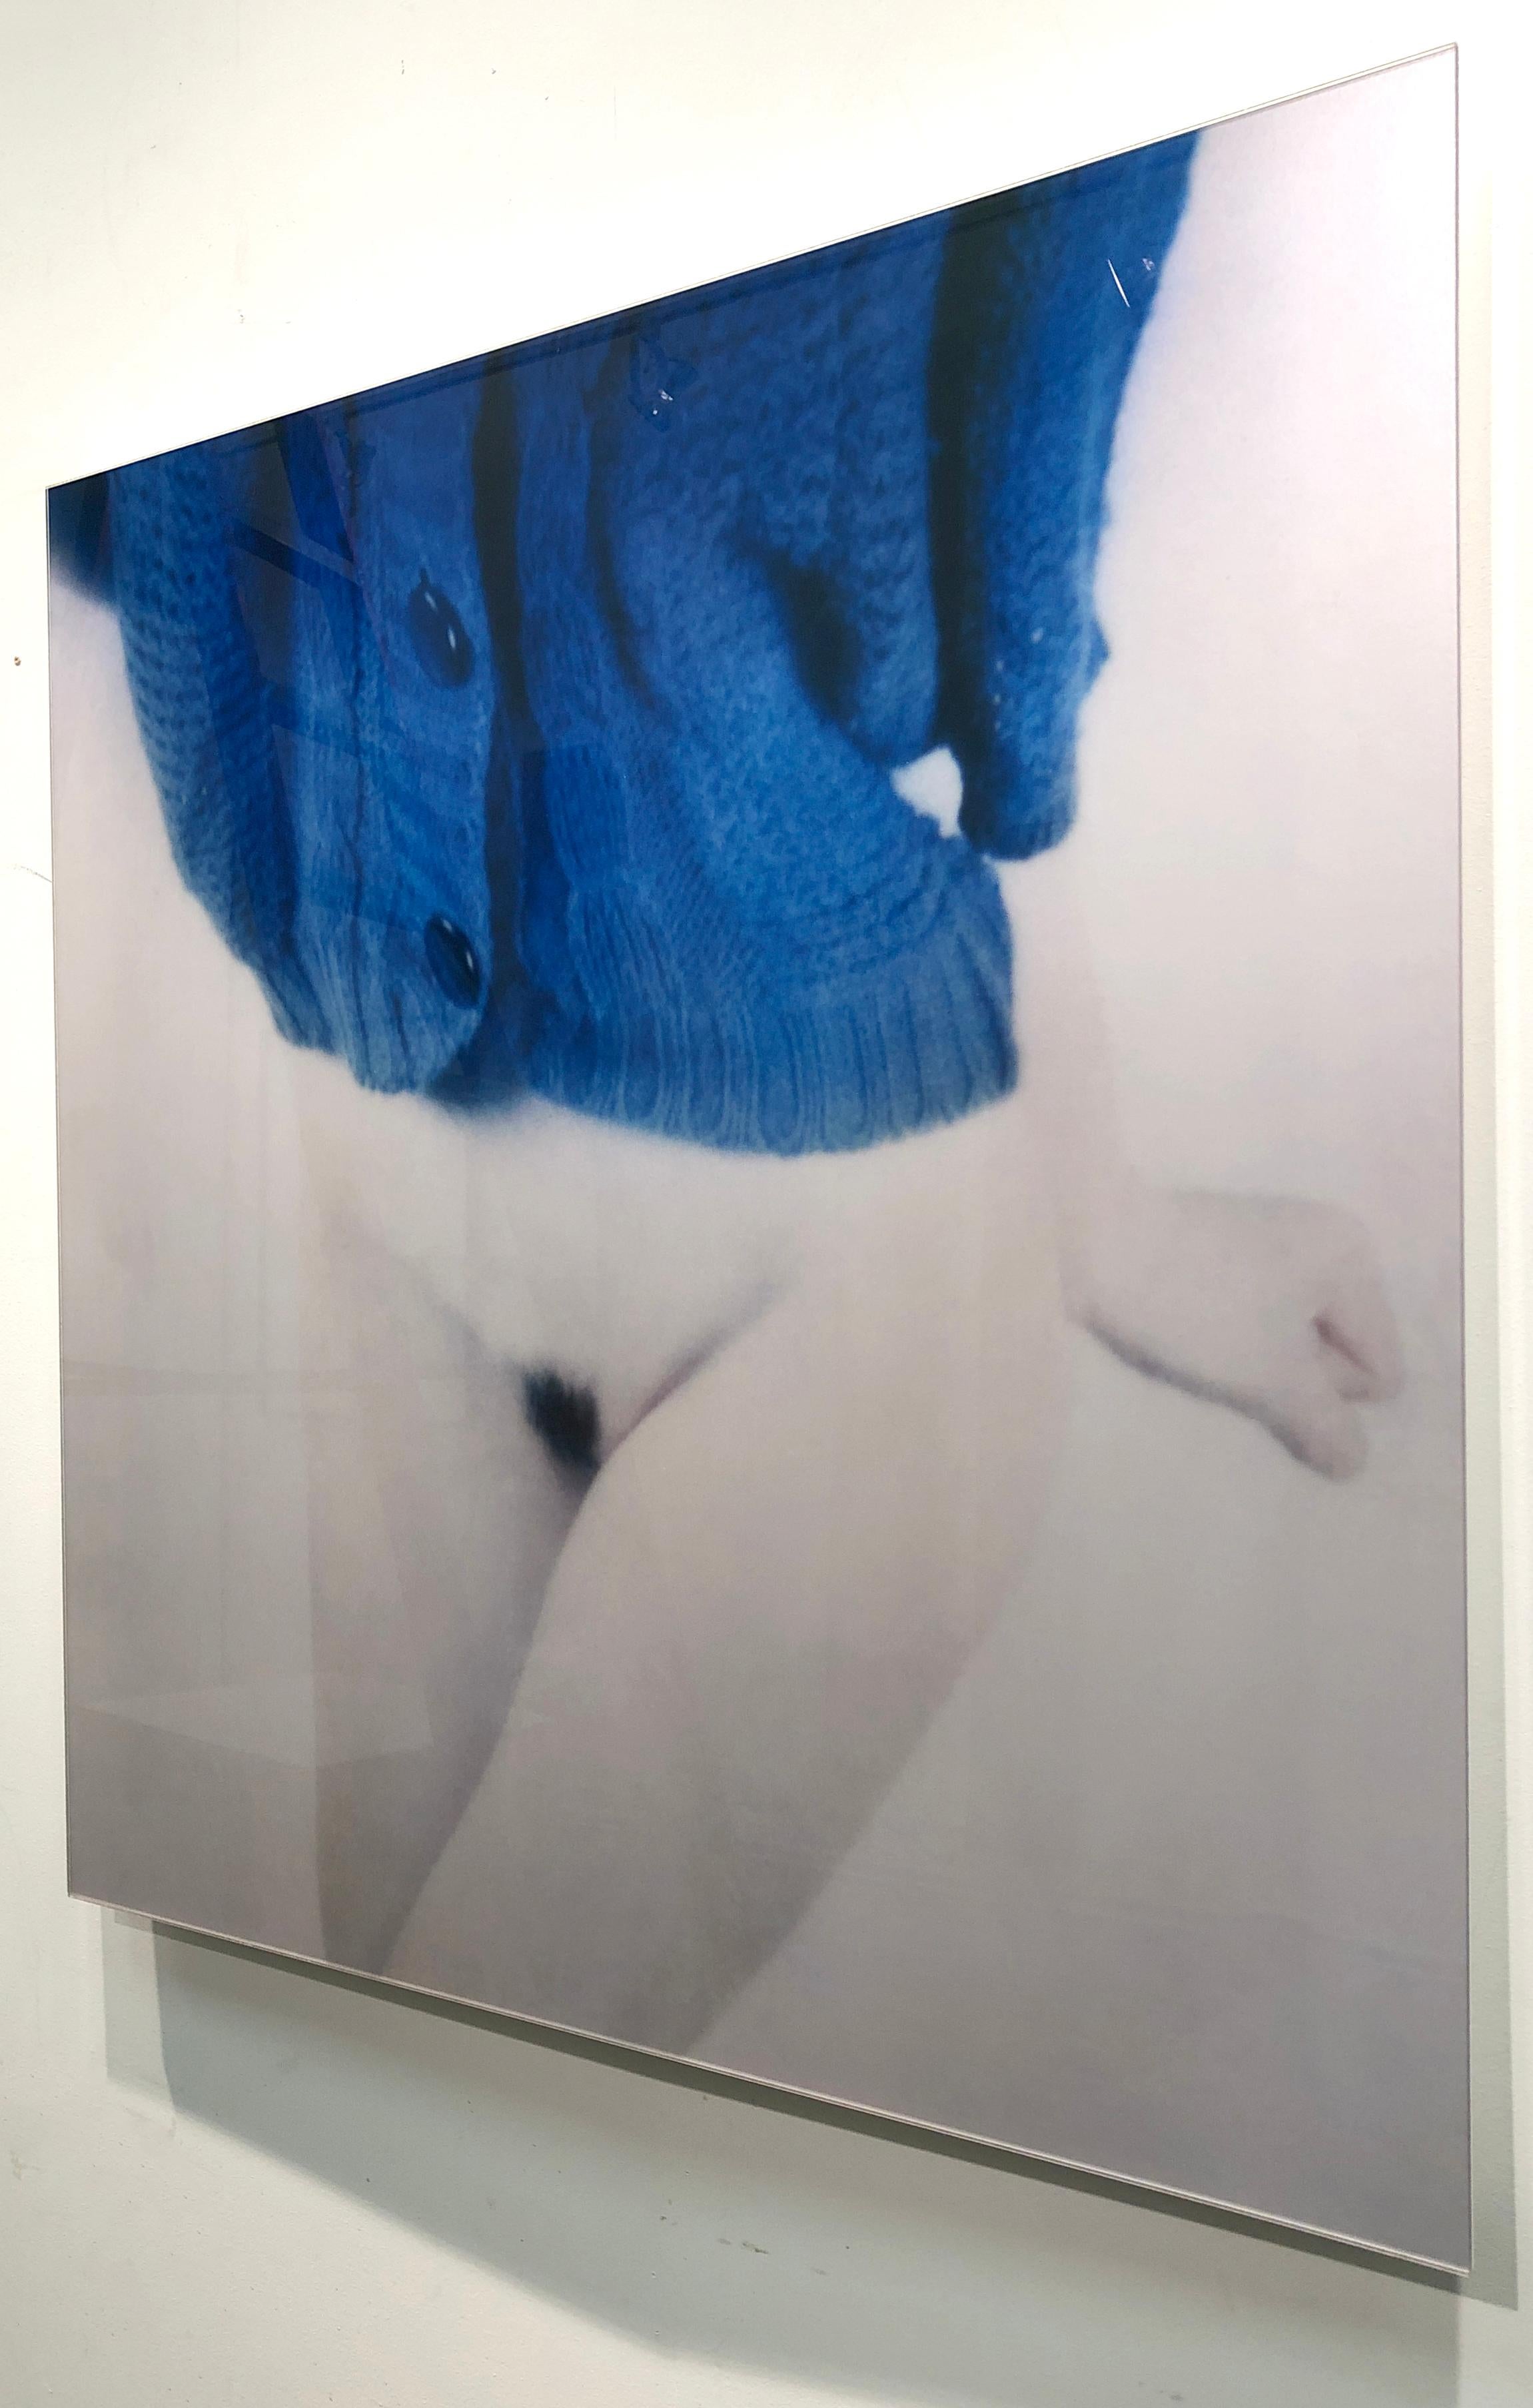 tricoté semi-nu et bleu, issu de la série de photographies Bright Bodies - Gris Figurative Photograph par Mira Loew